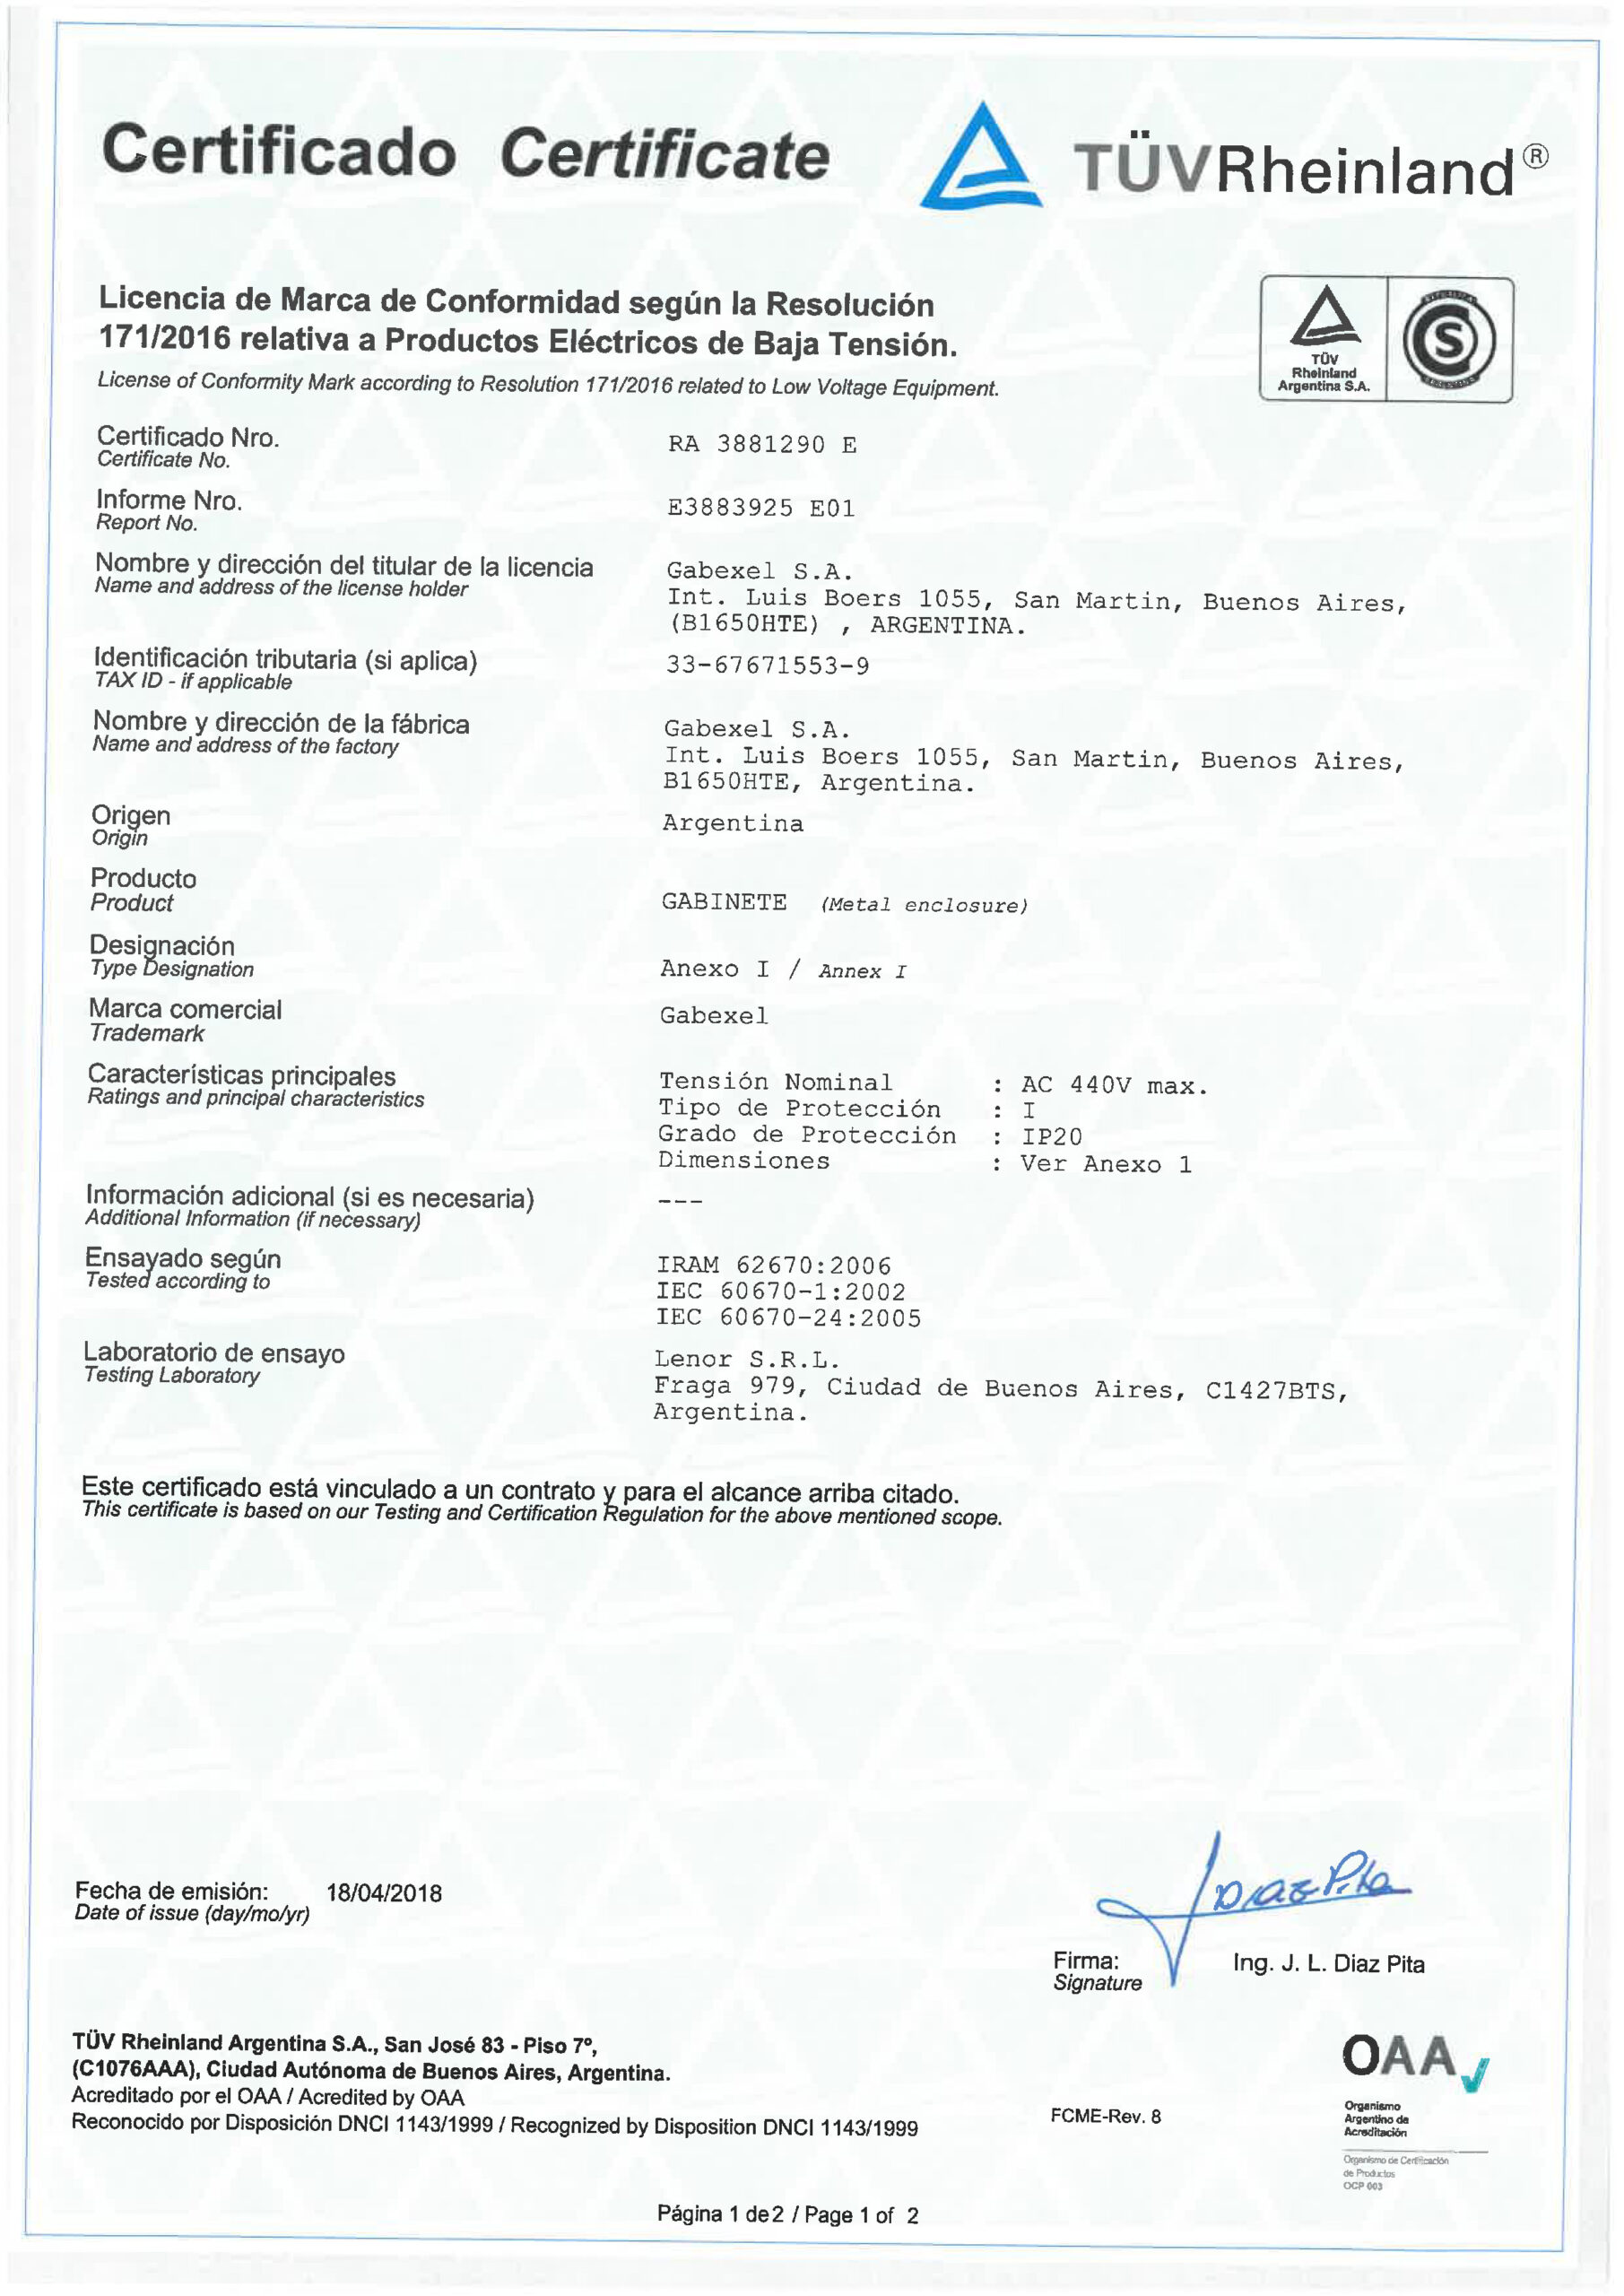 CertificadoFamilia2